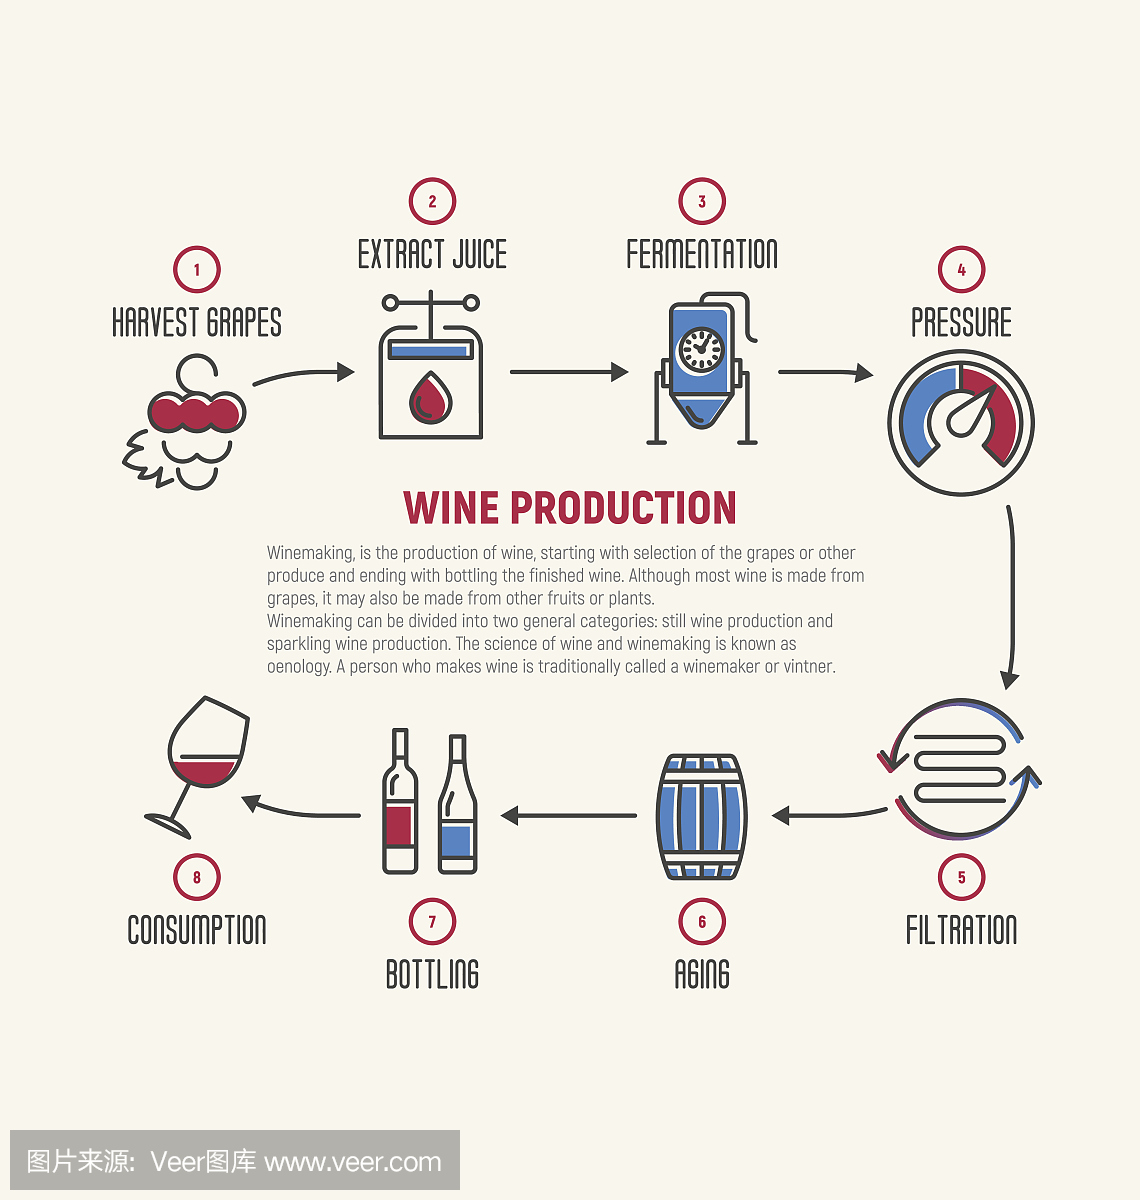 葡萄酒发酵细线图,制作。葡萄酒如何制作,葡萄